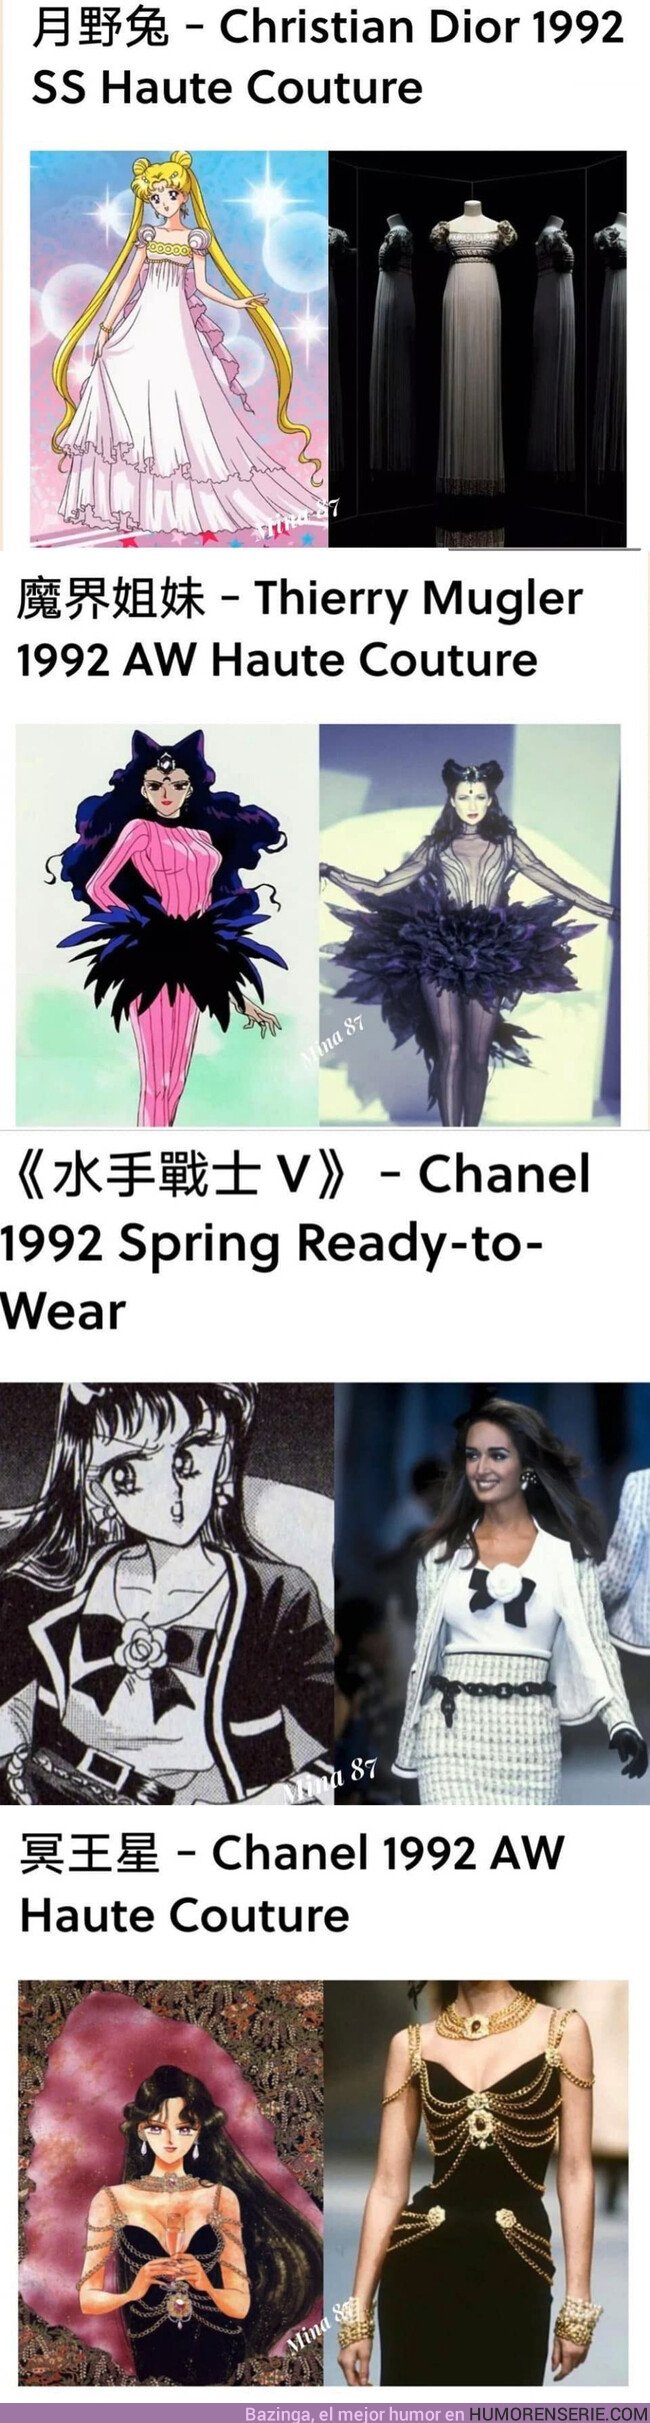 38031 - Los estilismos locos de Sailor Moon no eran tan random como pensábamos